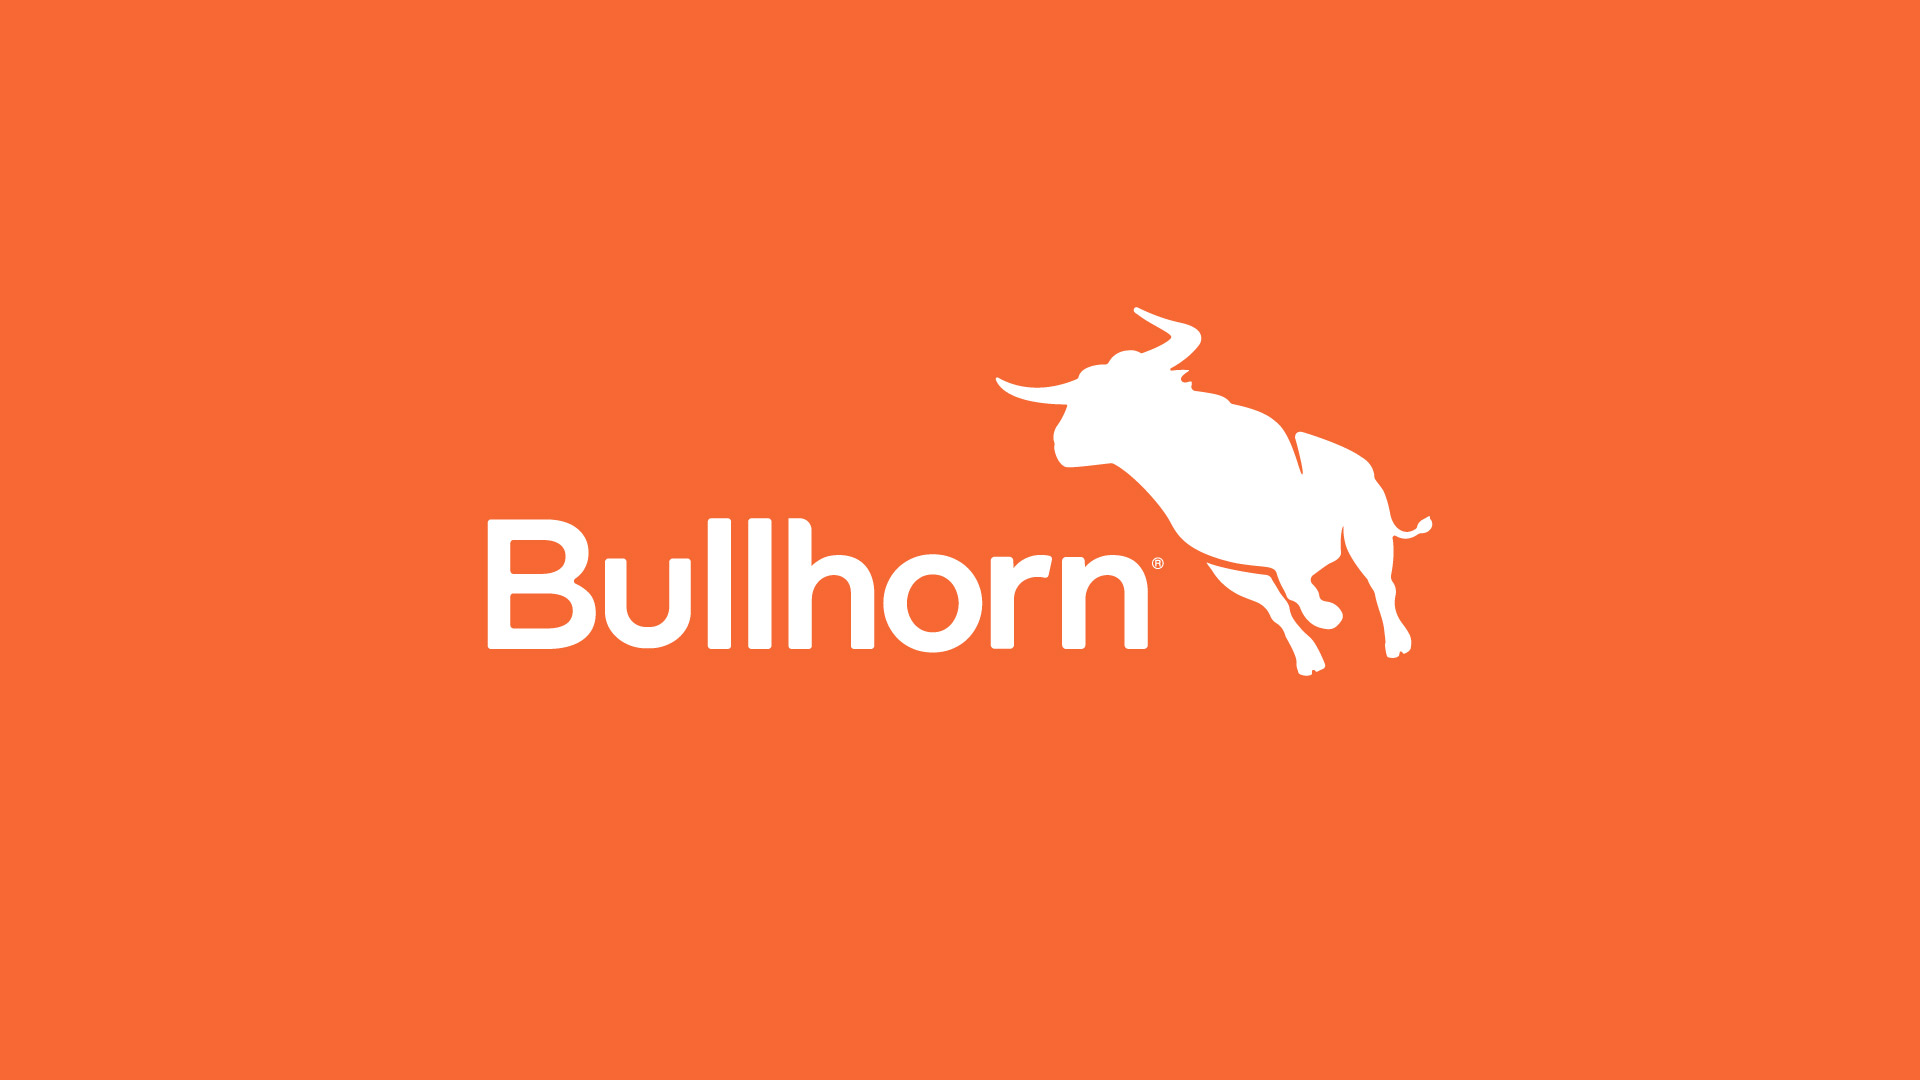 Bullhorn Join The Recruitment Network as a Gold Sponsor